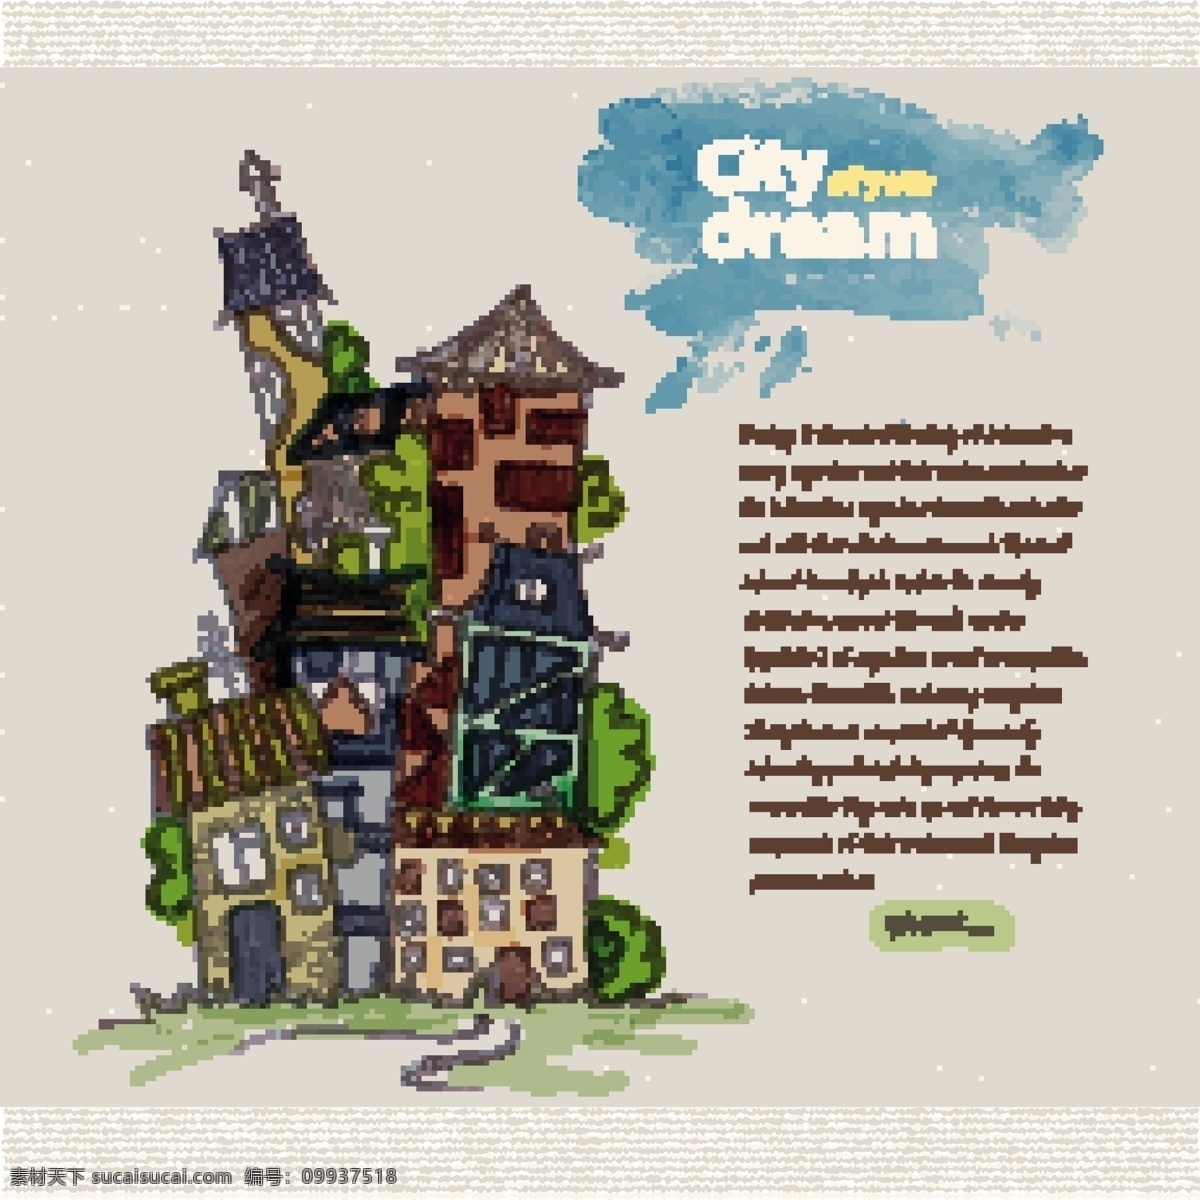 手绘 梦想 城市设计 矢量图 城市 矢量建筑 其他矢量图